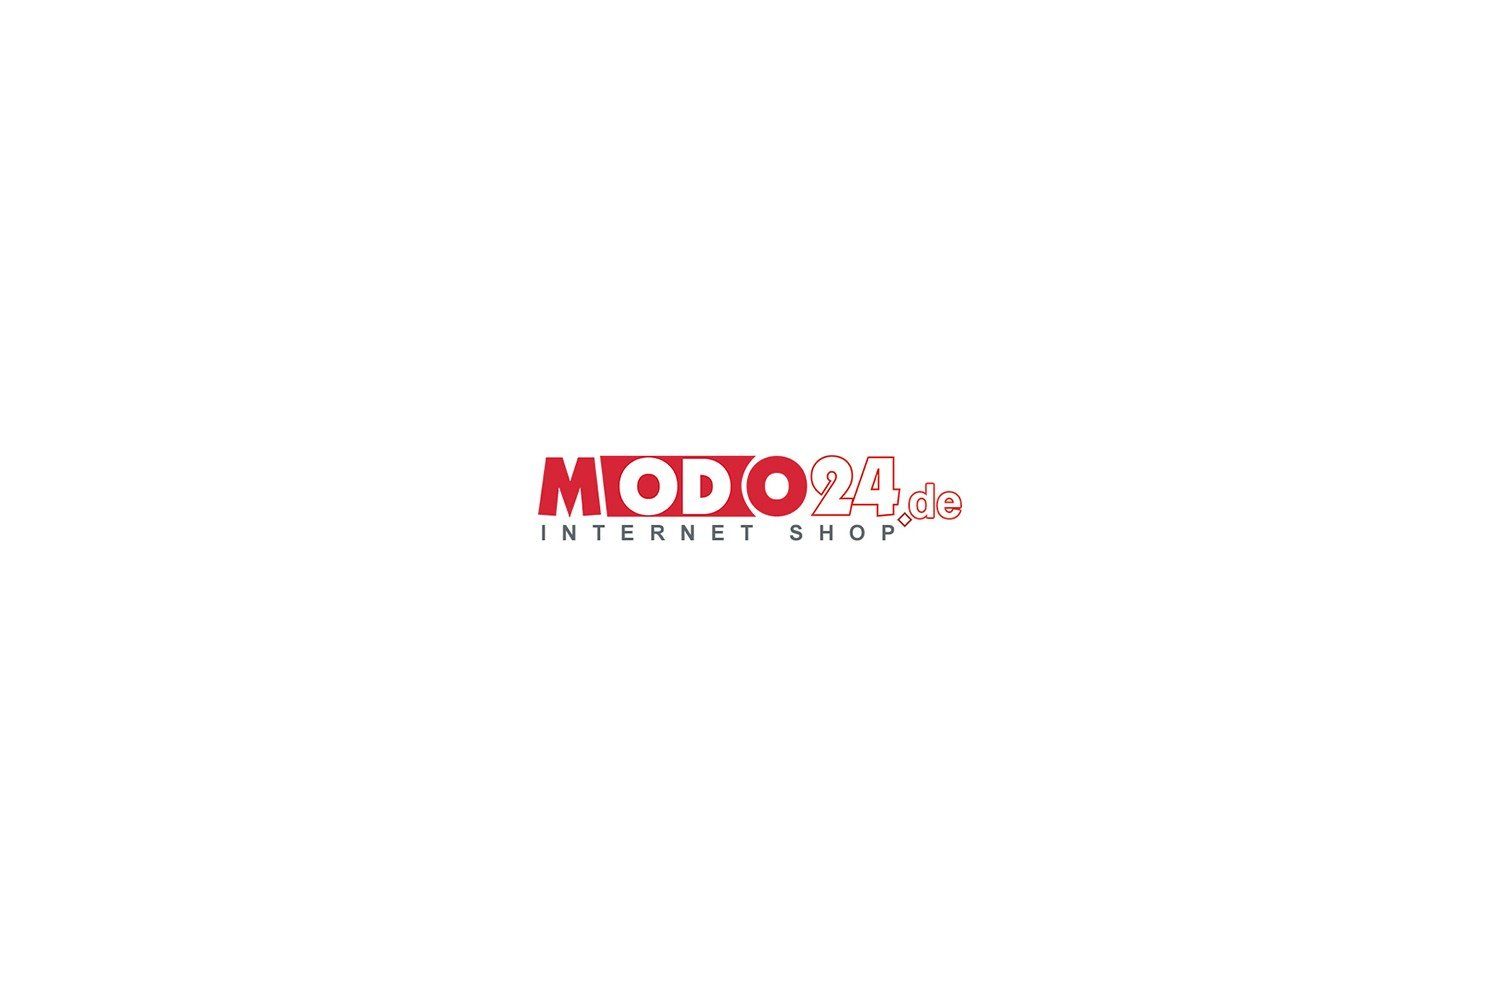 Modo24